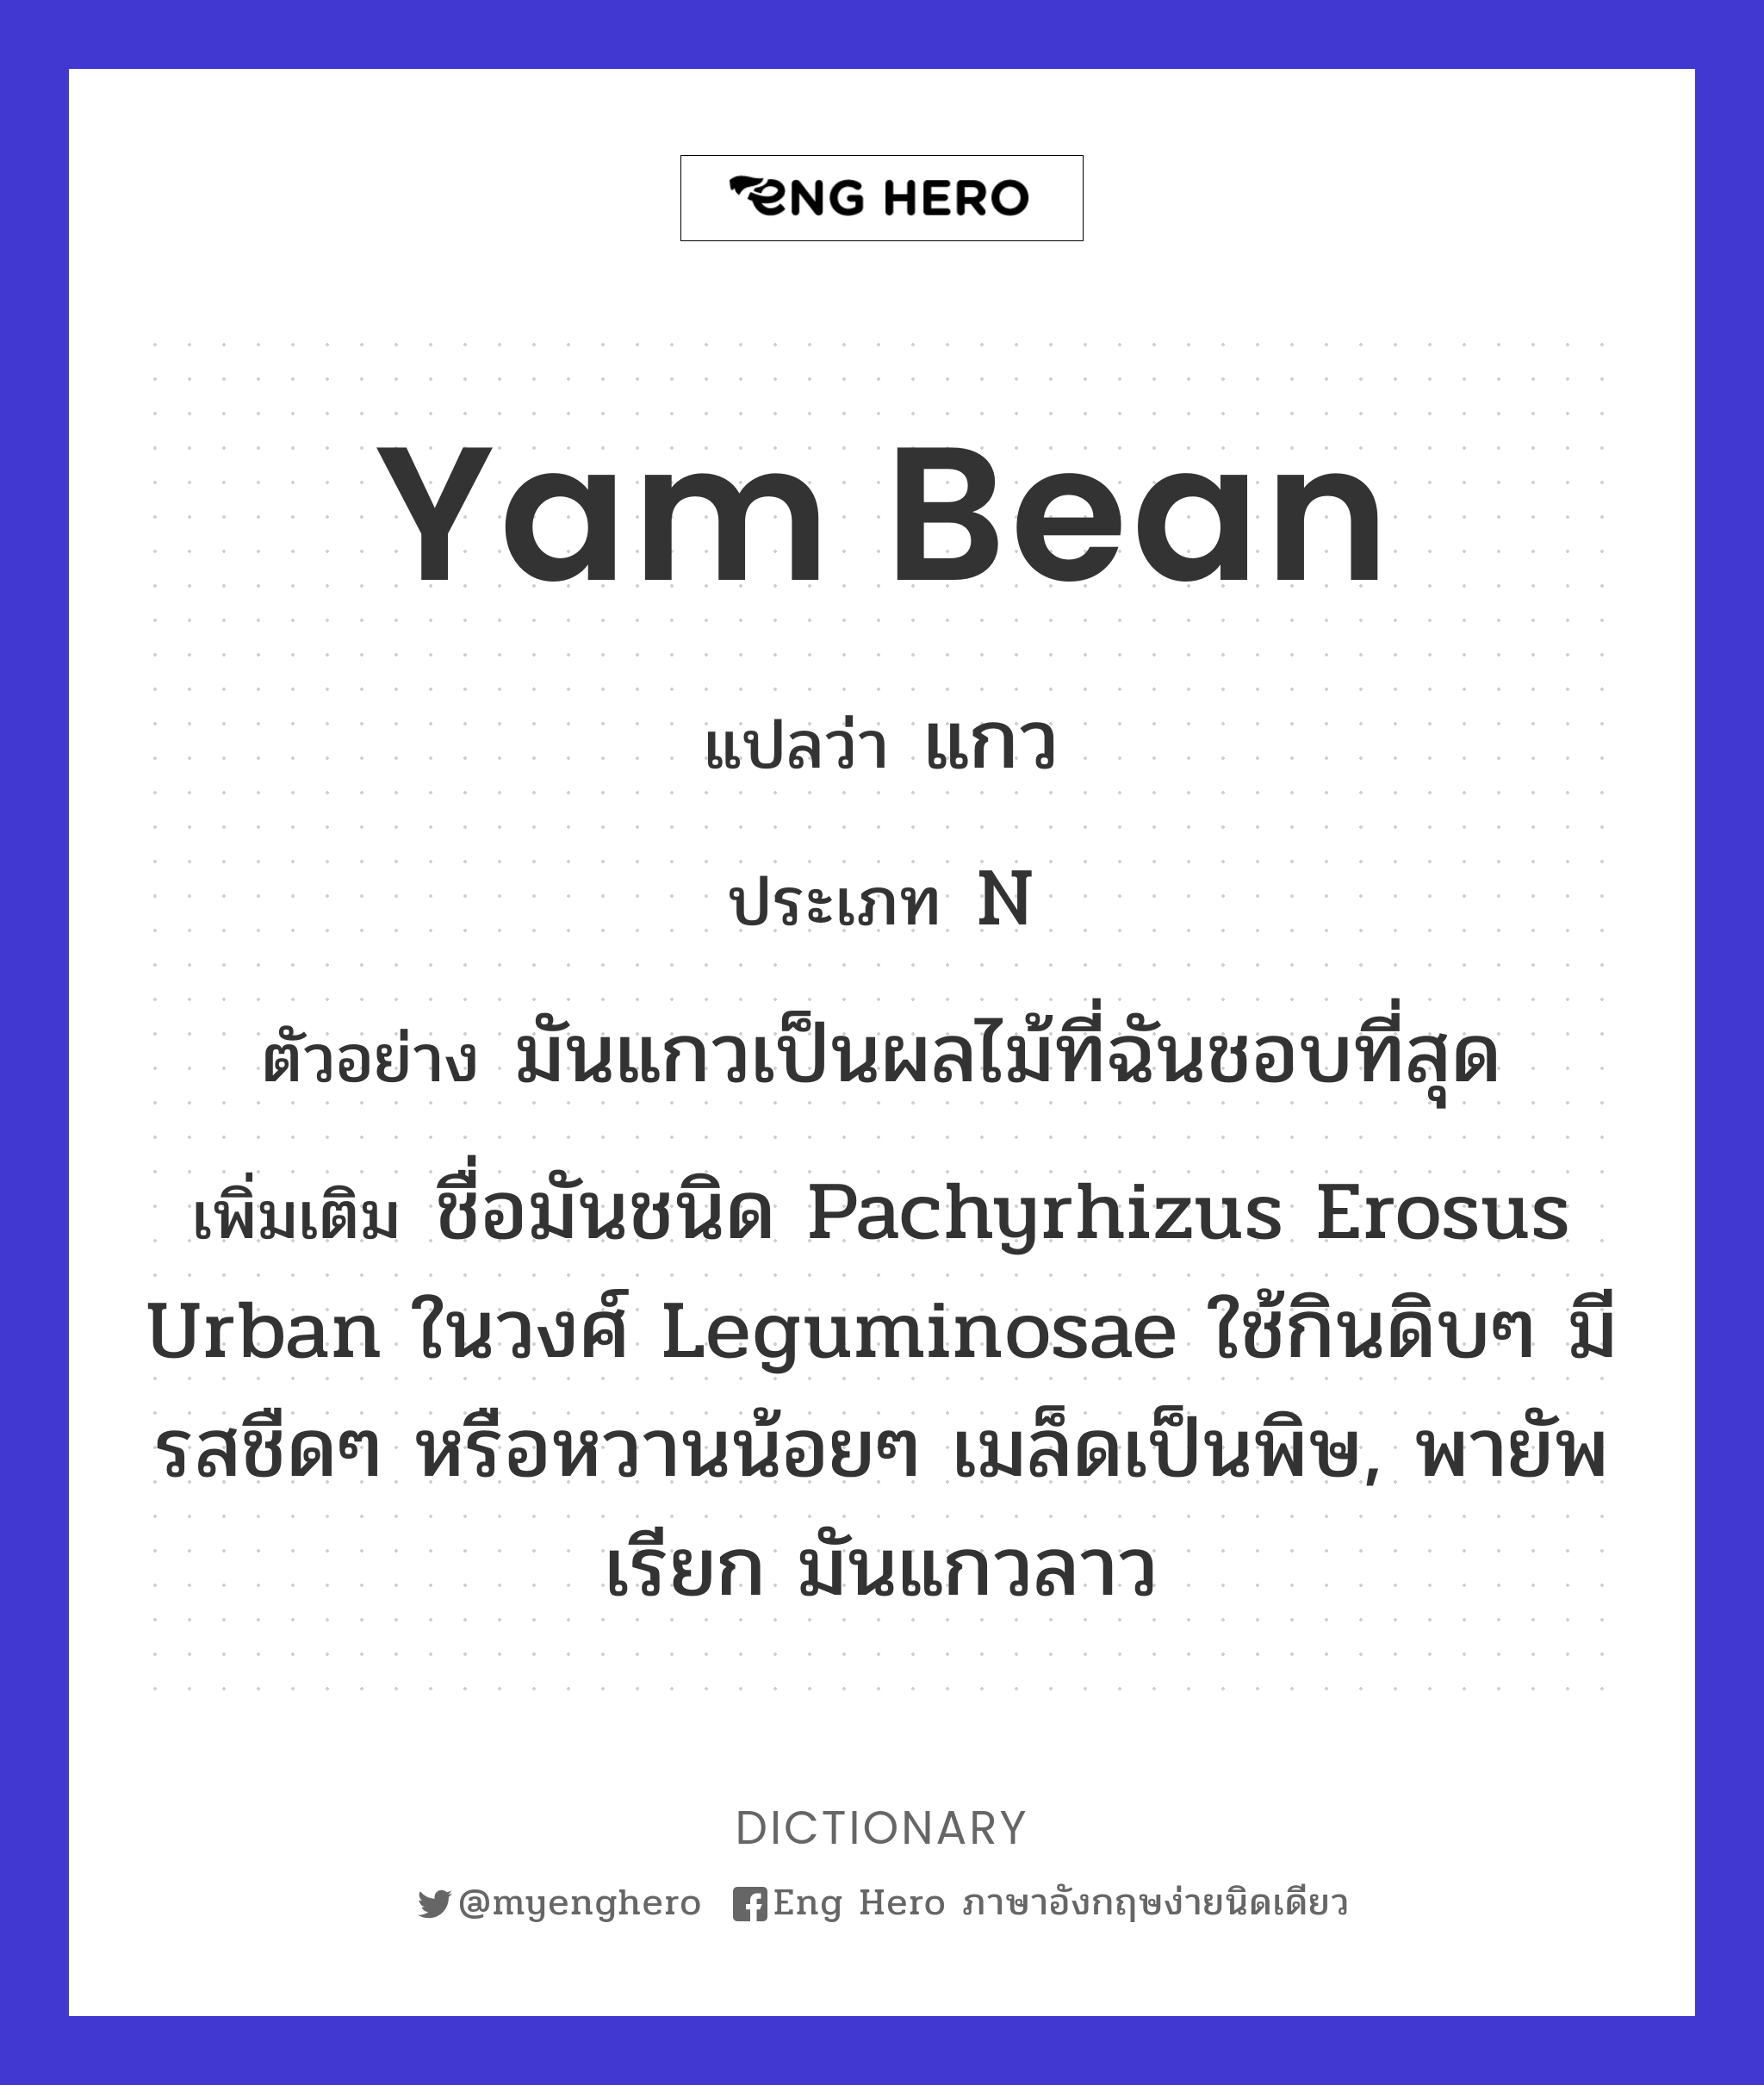 yam bean